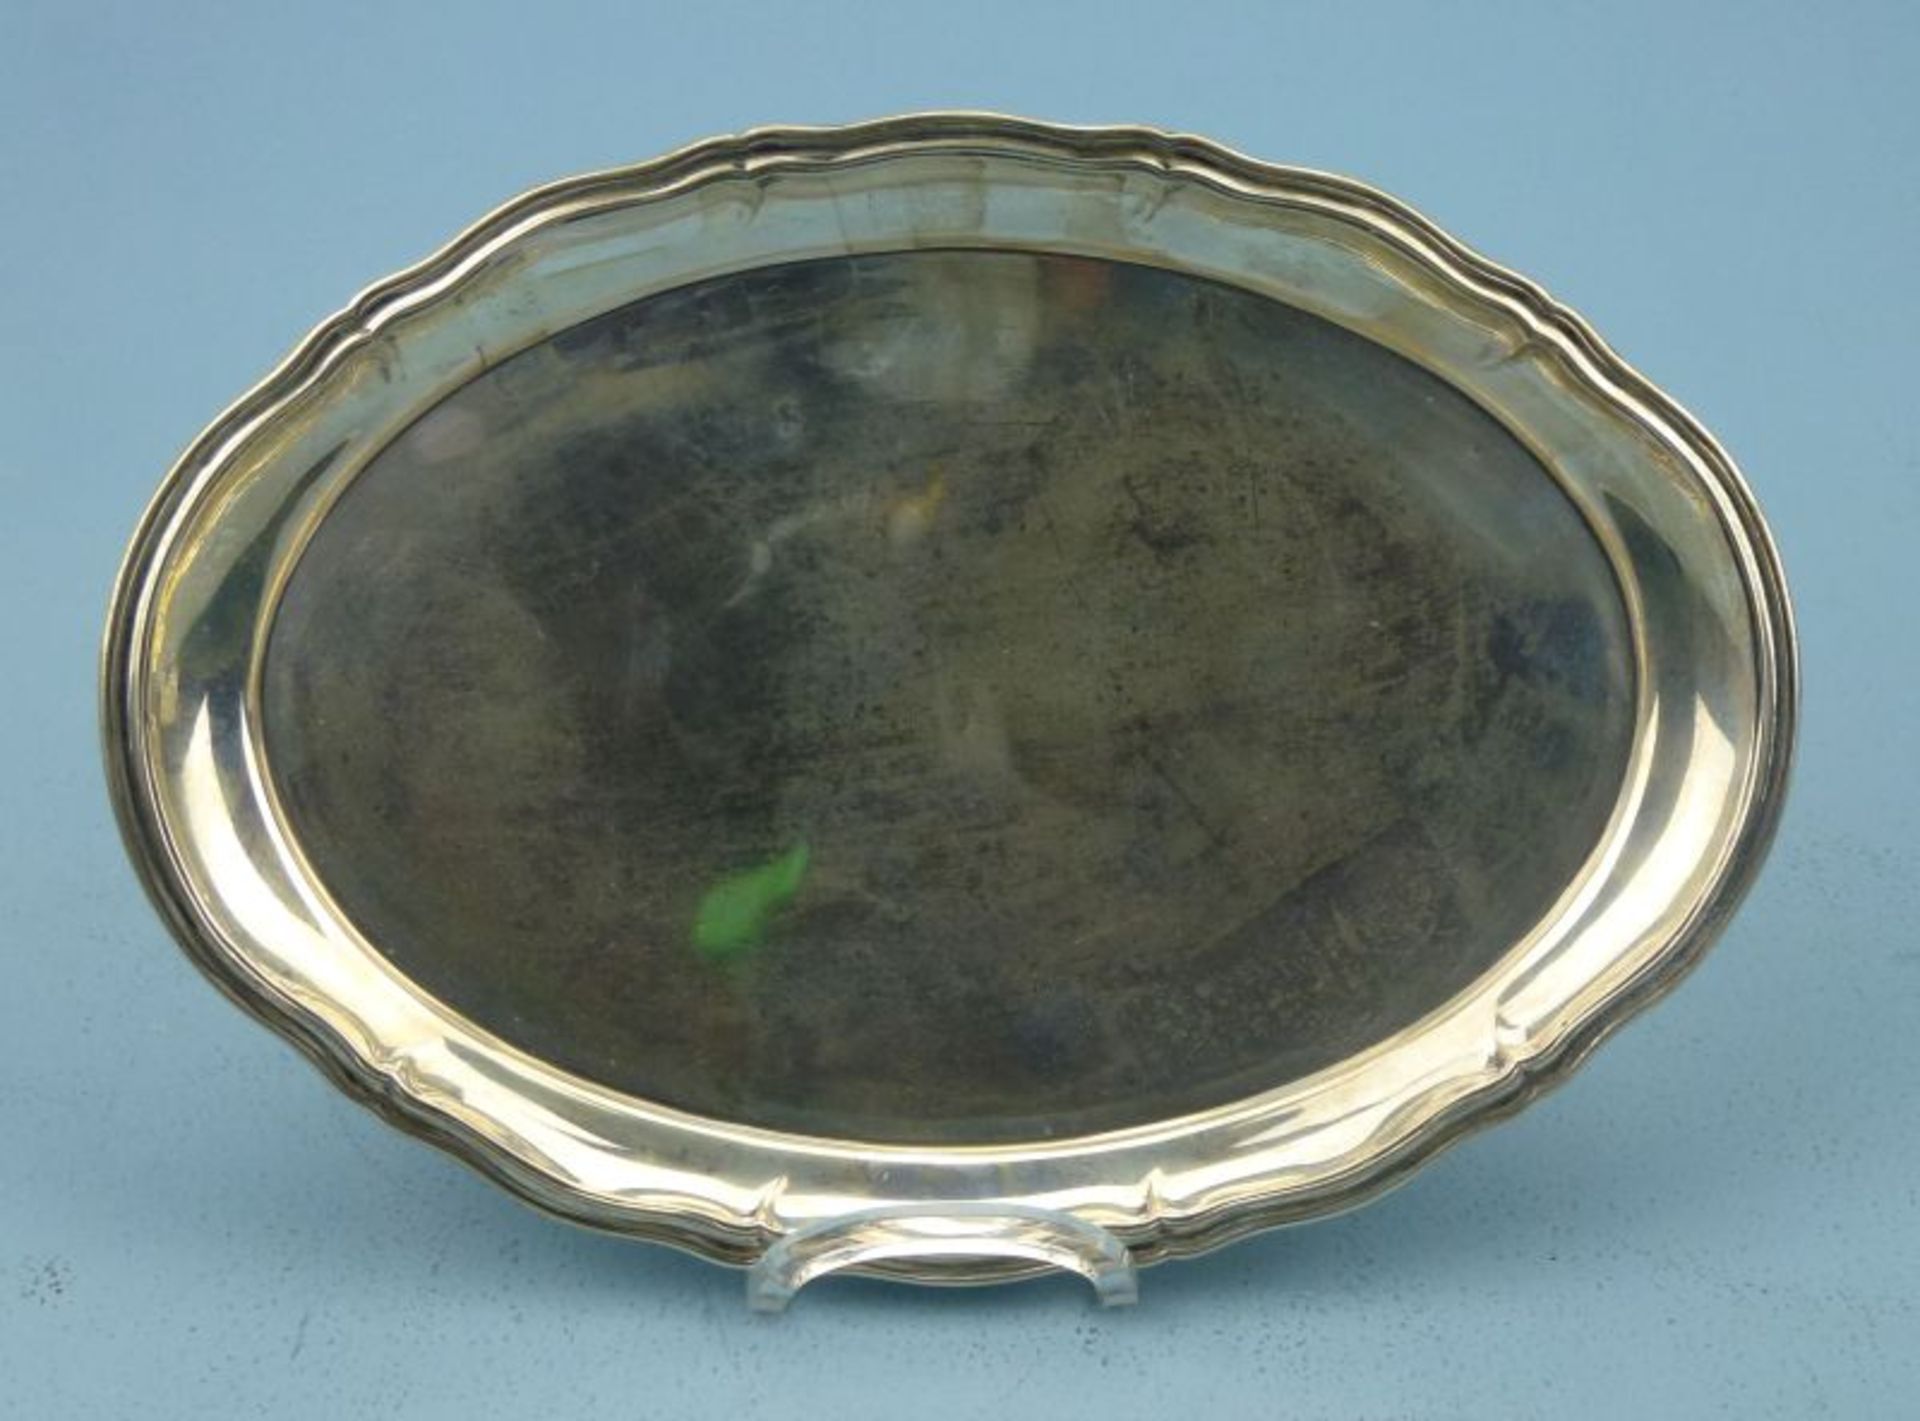 kl. TablettLutz & Weiss, 800er Silber oval, passig geschweift, leicht beulig, 24x17cm, 153g